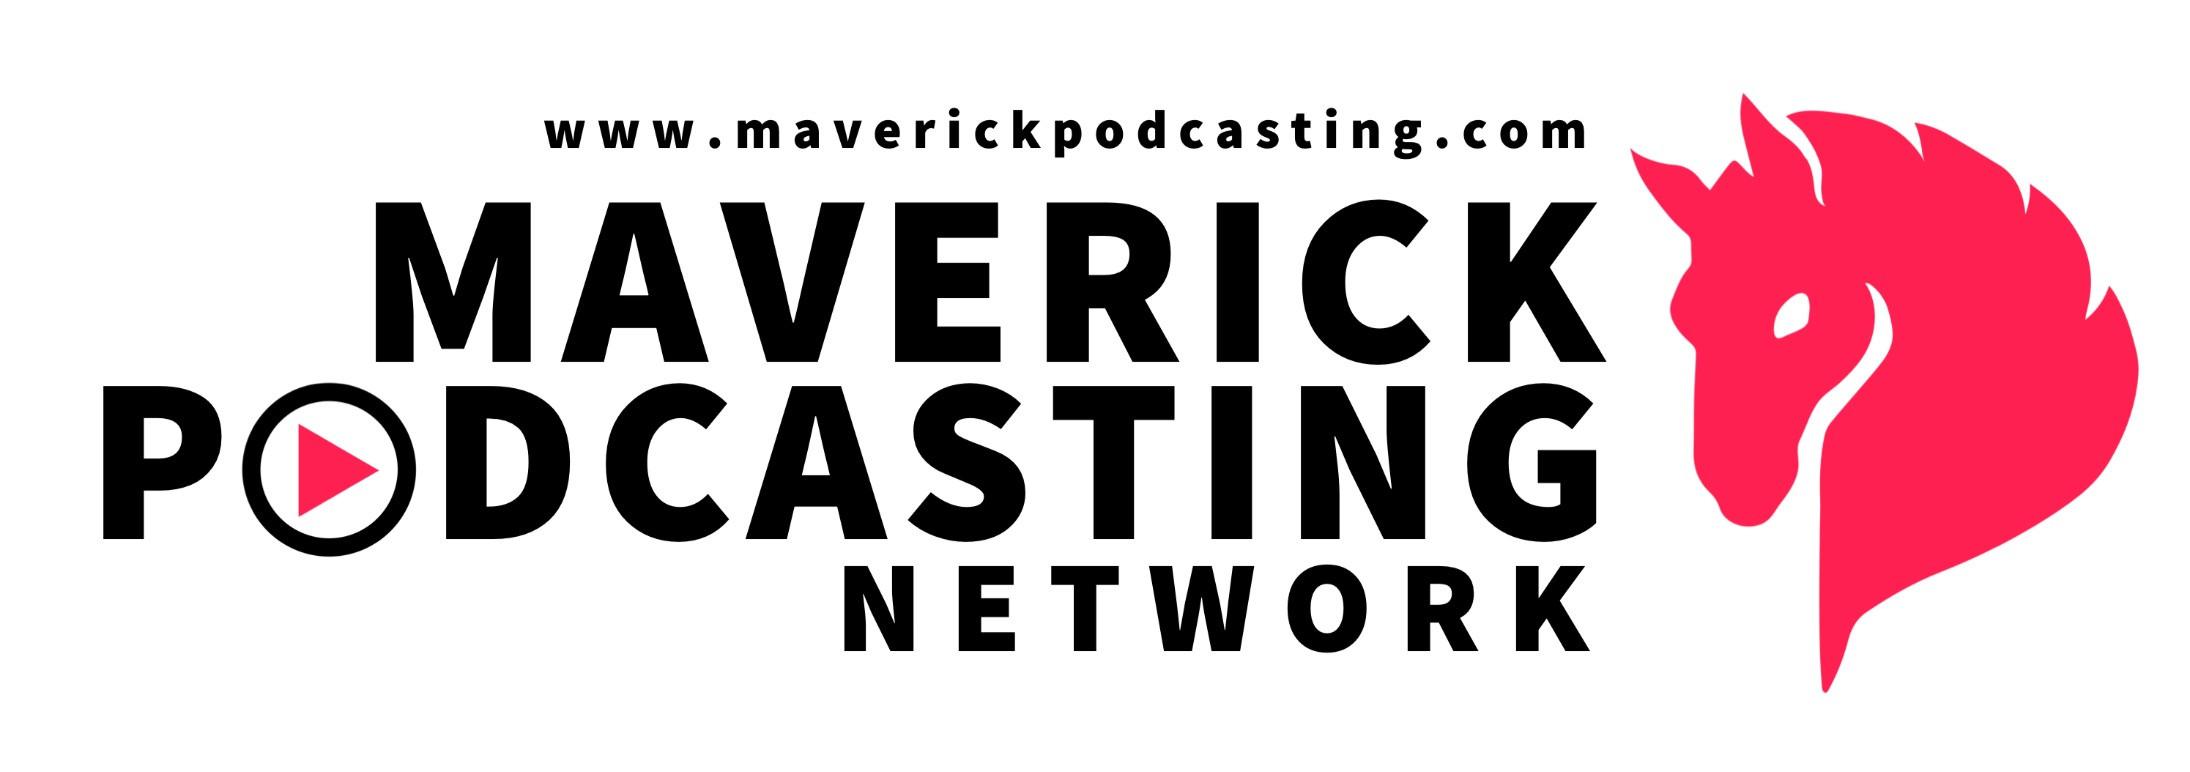 Product Create | Maverick Podcasting Network image